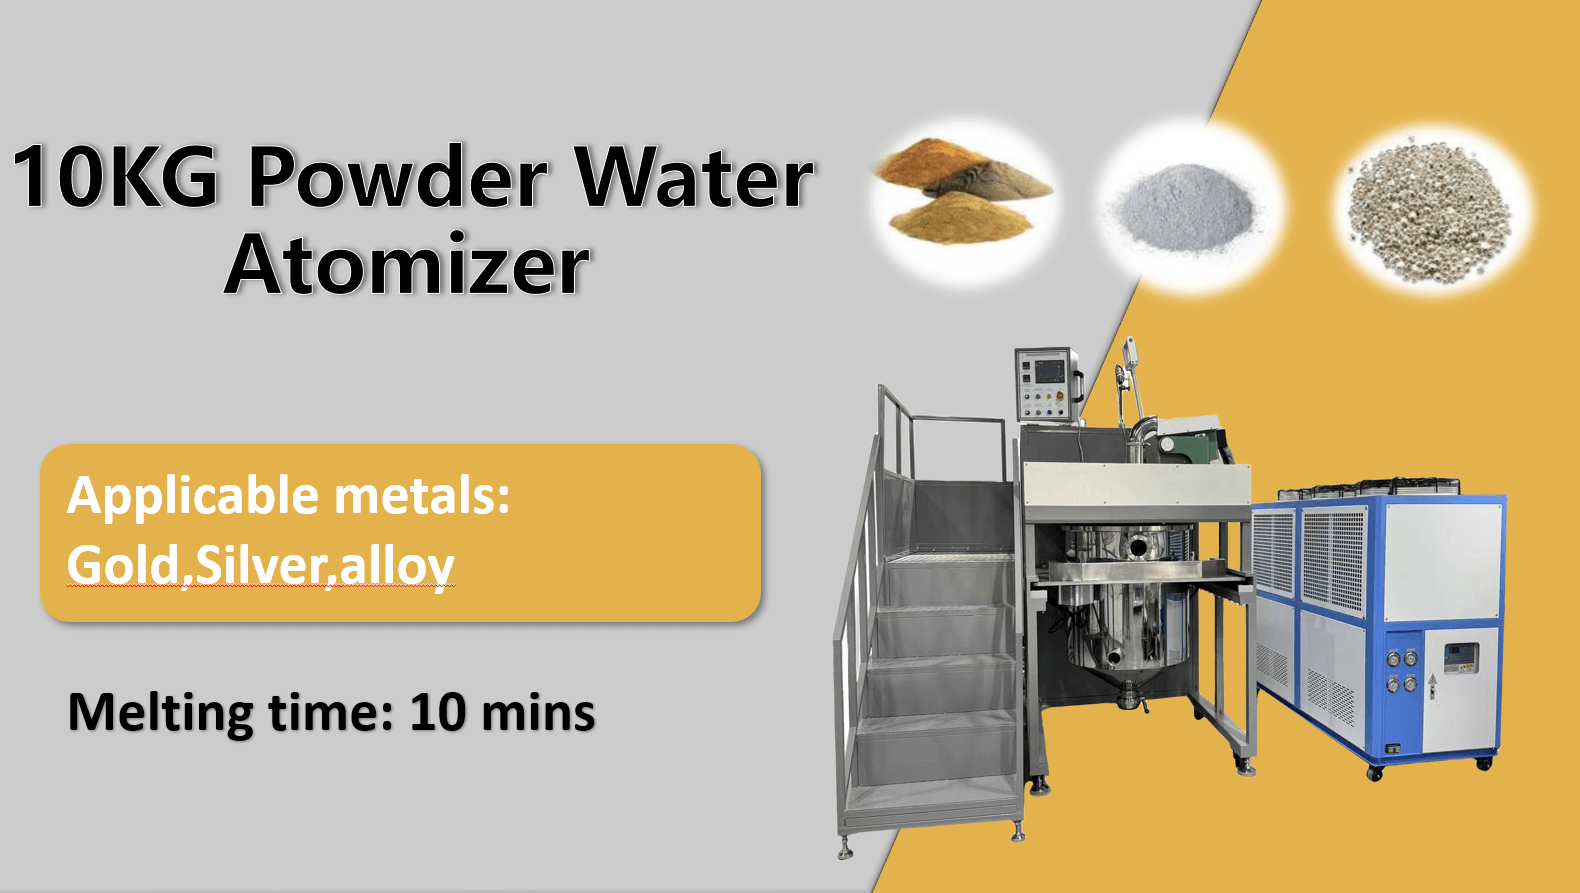 10kg Powder Water Atomizer